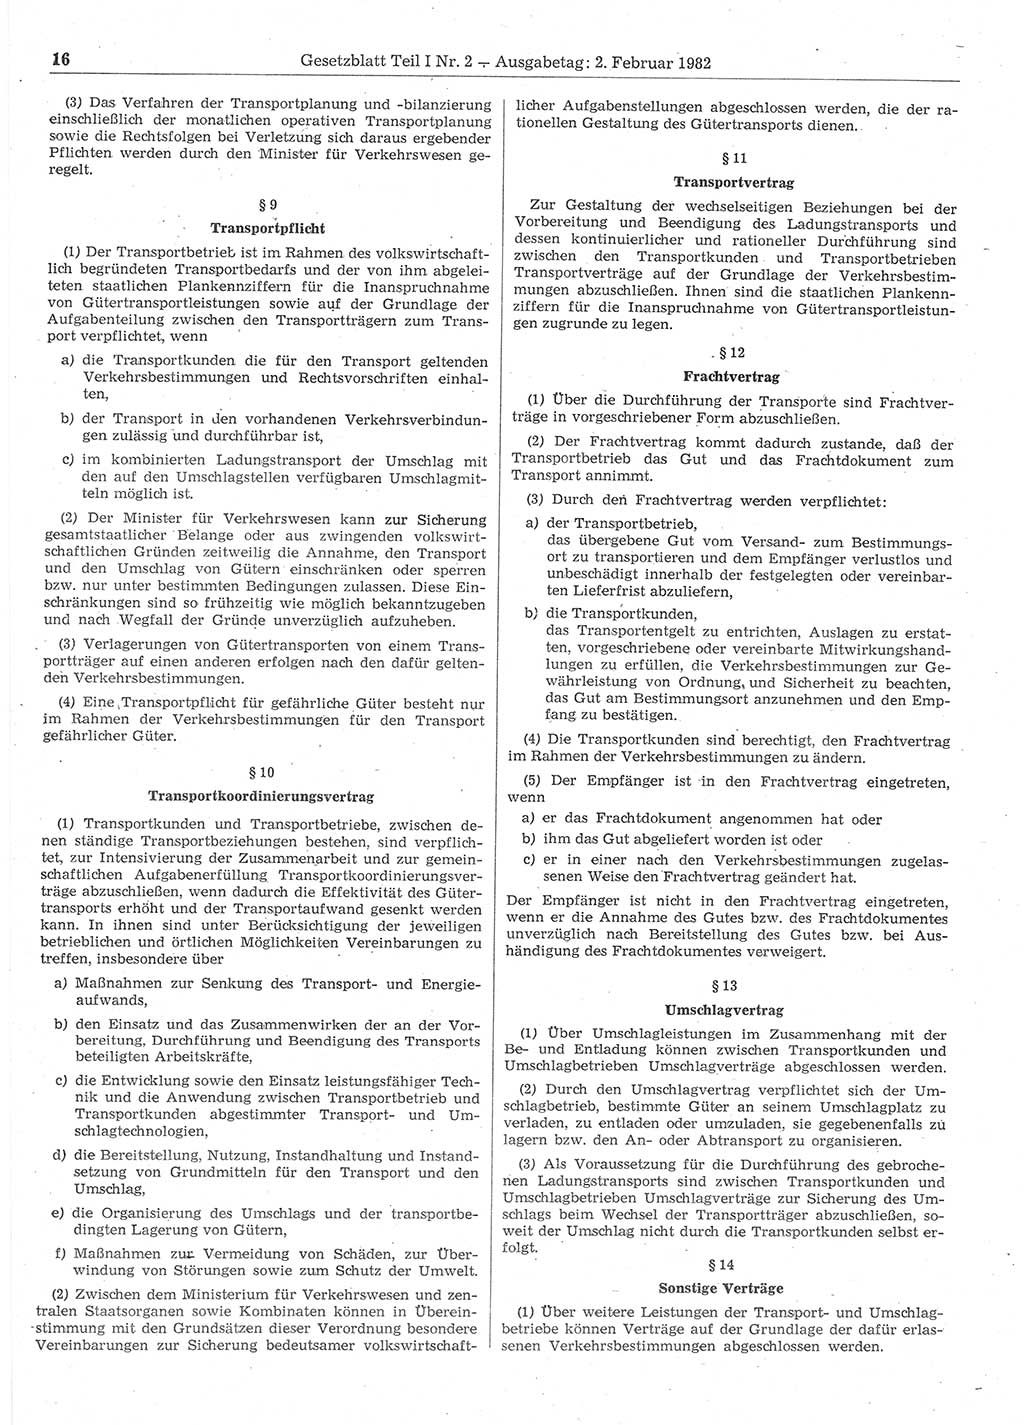 Gesetzblatt (GBl.) der Deutschen Demokratischen Republik (DDR) Teil Ⅰ 1982, Seite 16 (GBl. DDR Ⅰ 1982, S. 16)